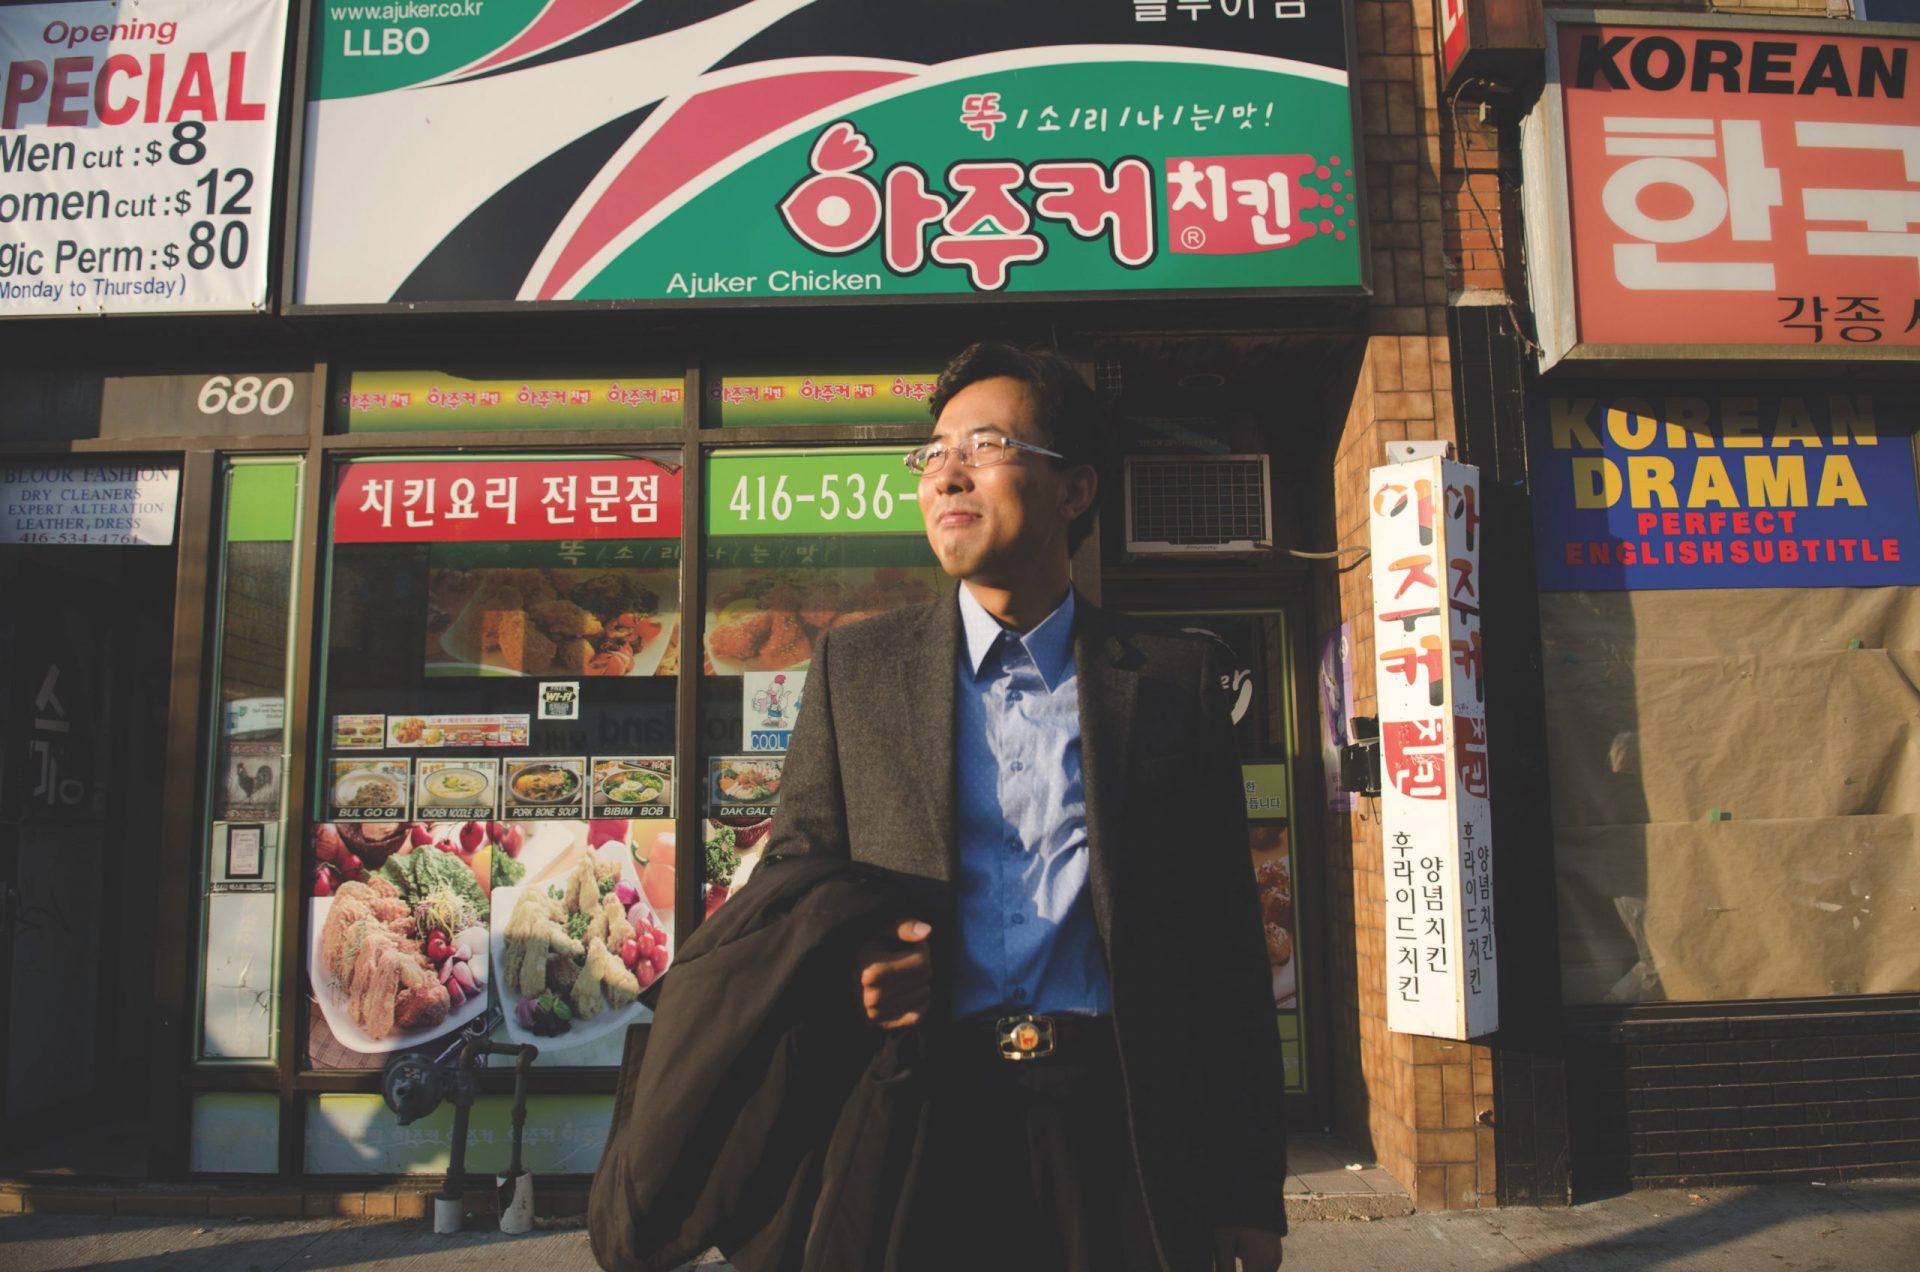 Korean man on street in front of Korean shops